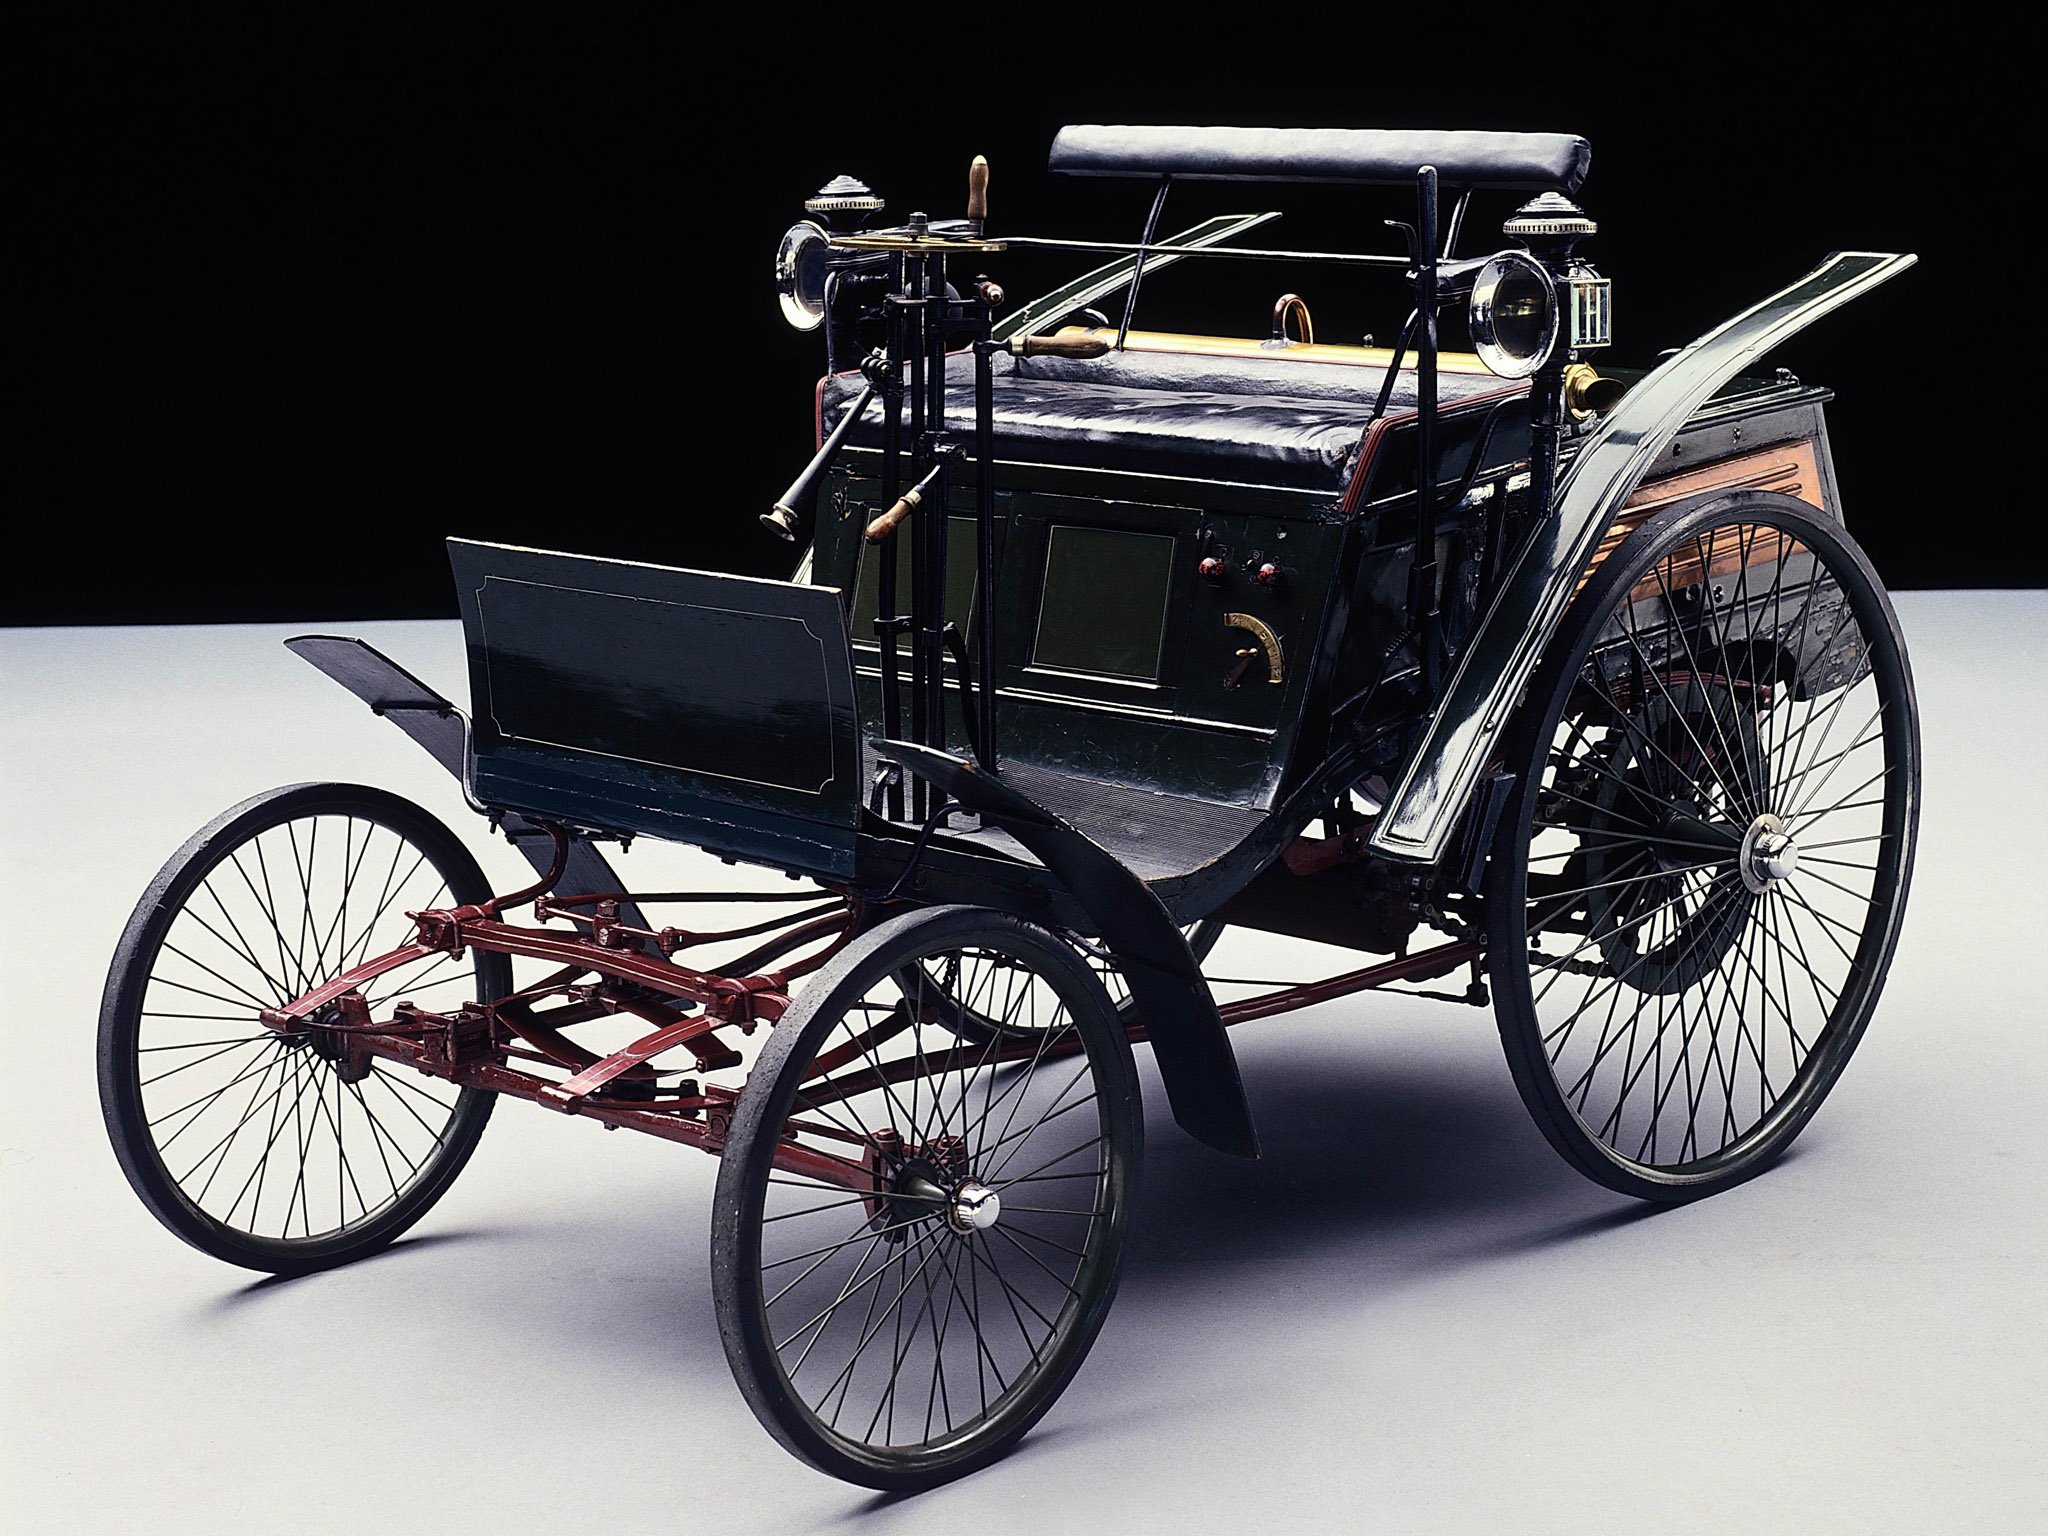 Первый автомобиль в истории. Benz velo 1894. “Benz velo” 1894 года с клаксоном. Первый Мерседес Бенц 1886.